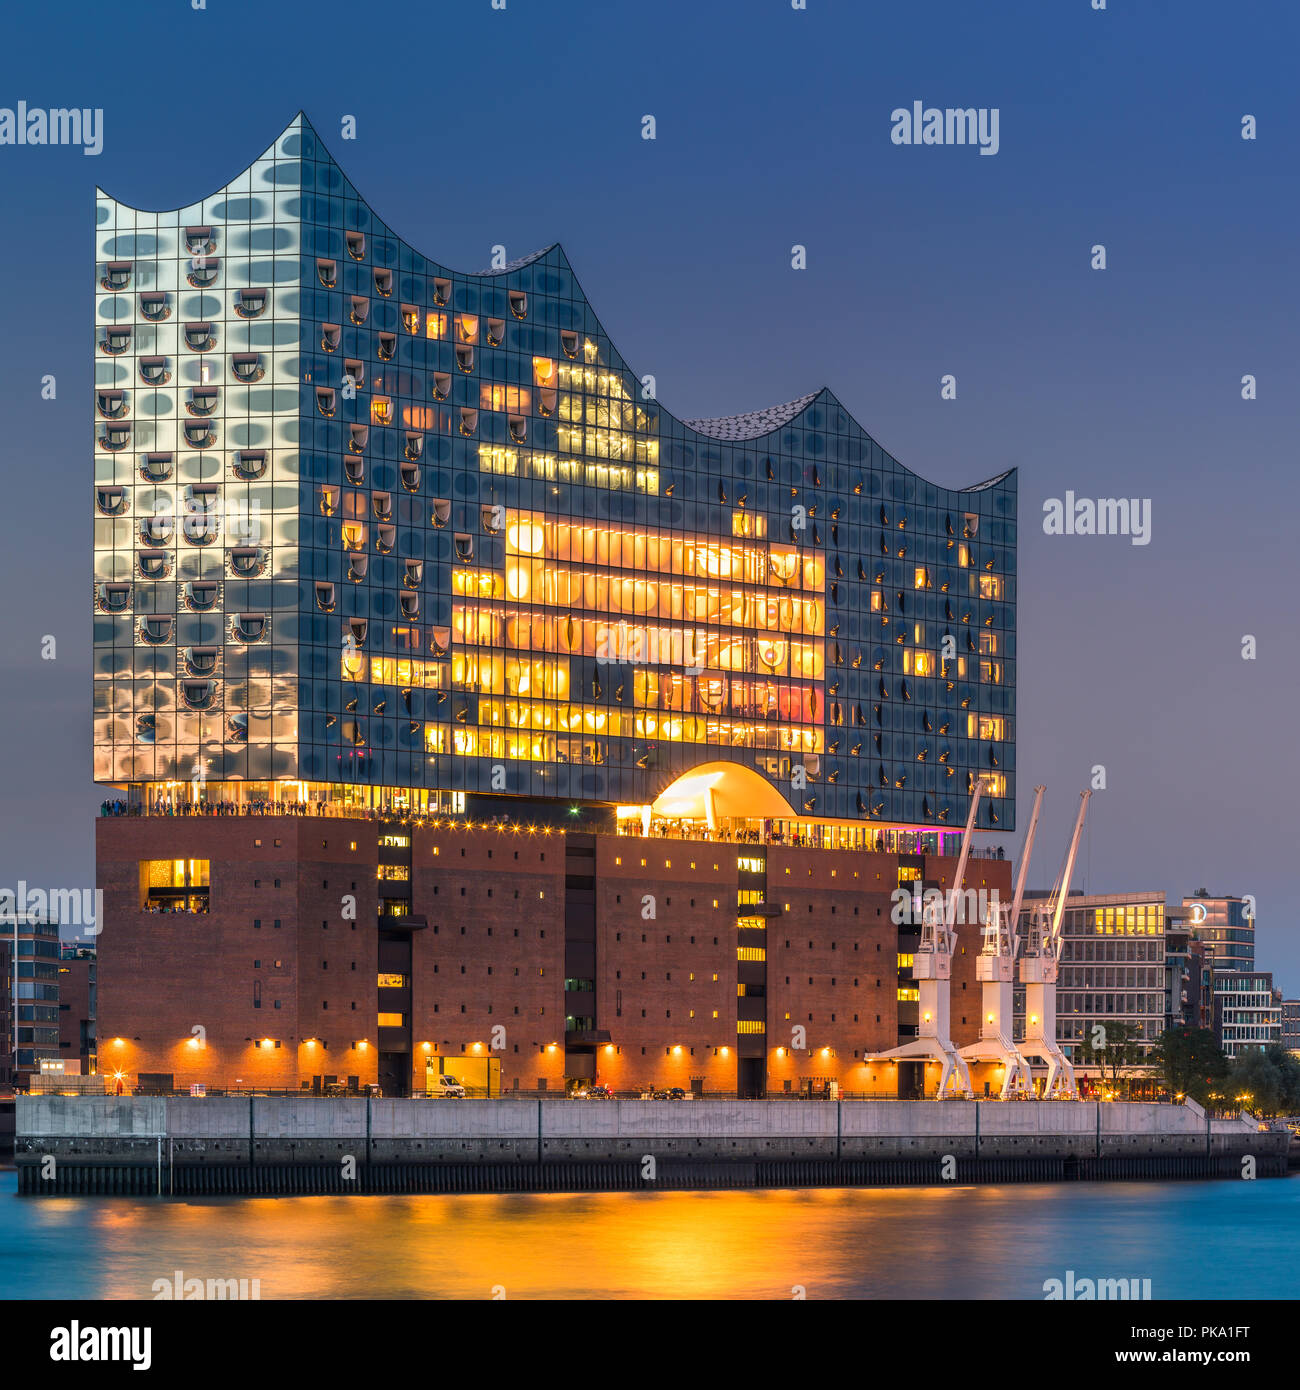 Die Elbphilharmonie (Elbphilharmonie) ist ein konzertsaal in der HafenCity Quartal Hamburg, Deutschland, auf der Halbinsel von der Elbe. Es ist Stockfoto